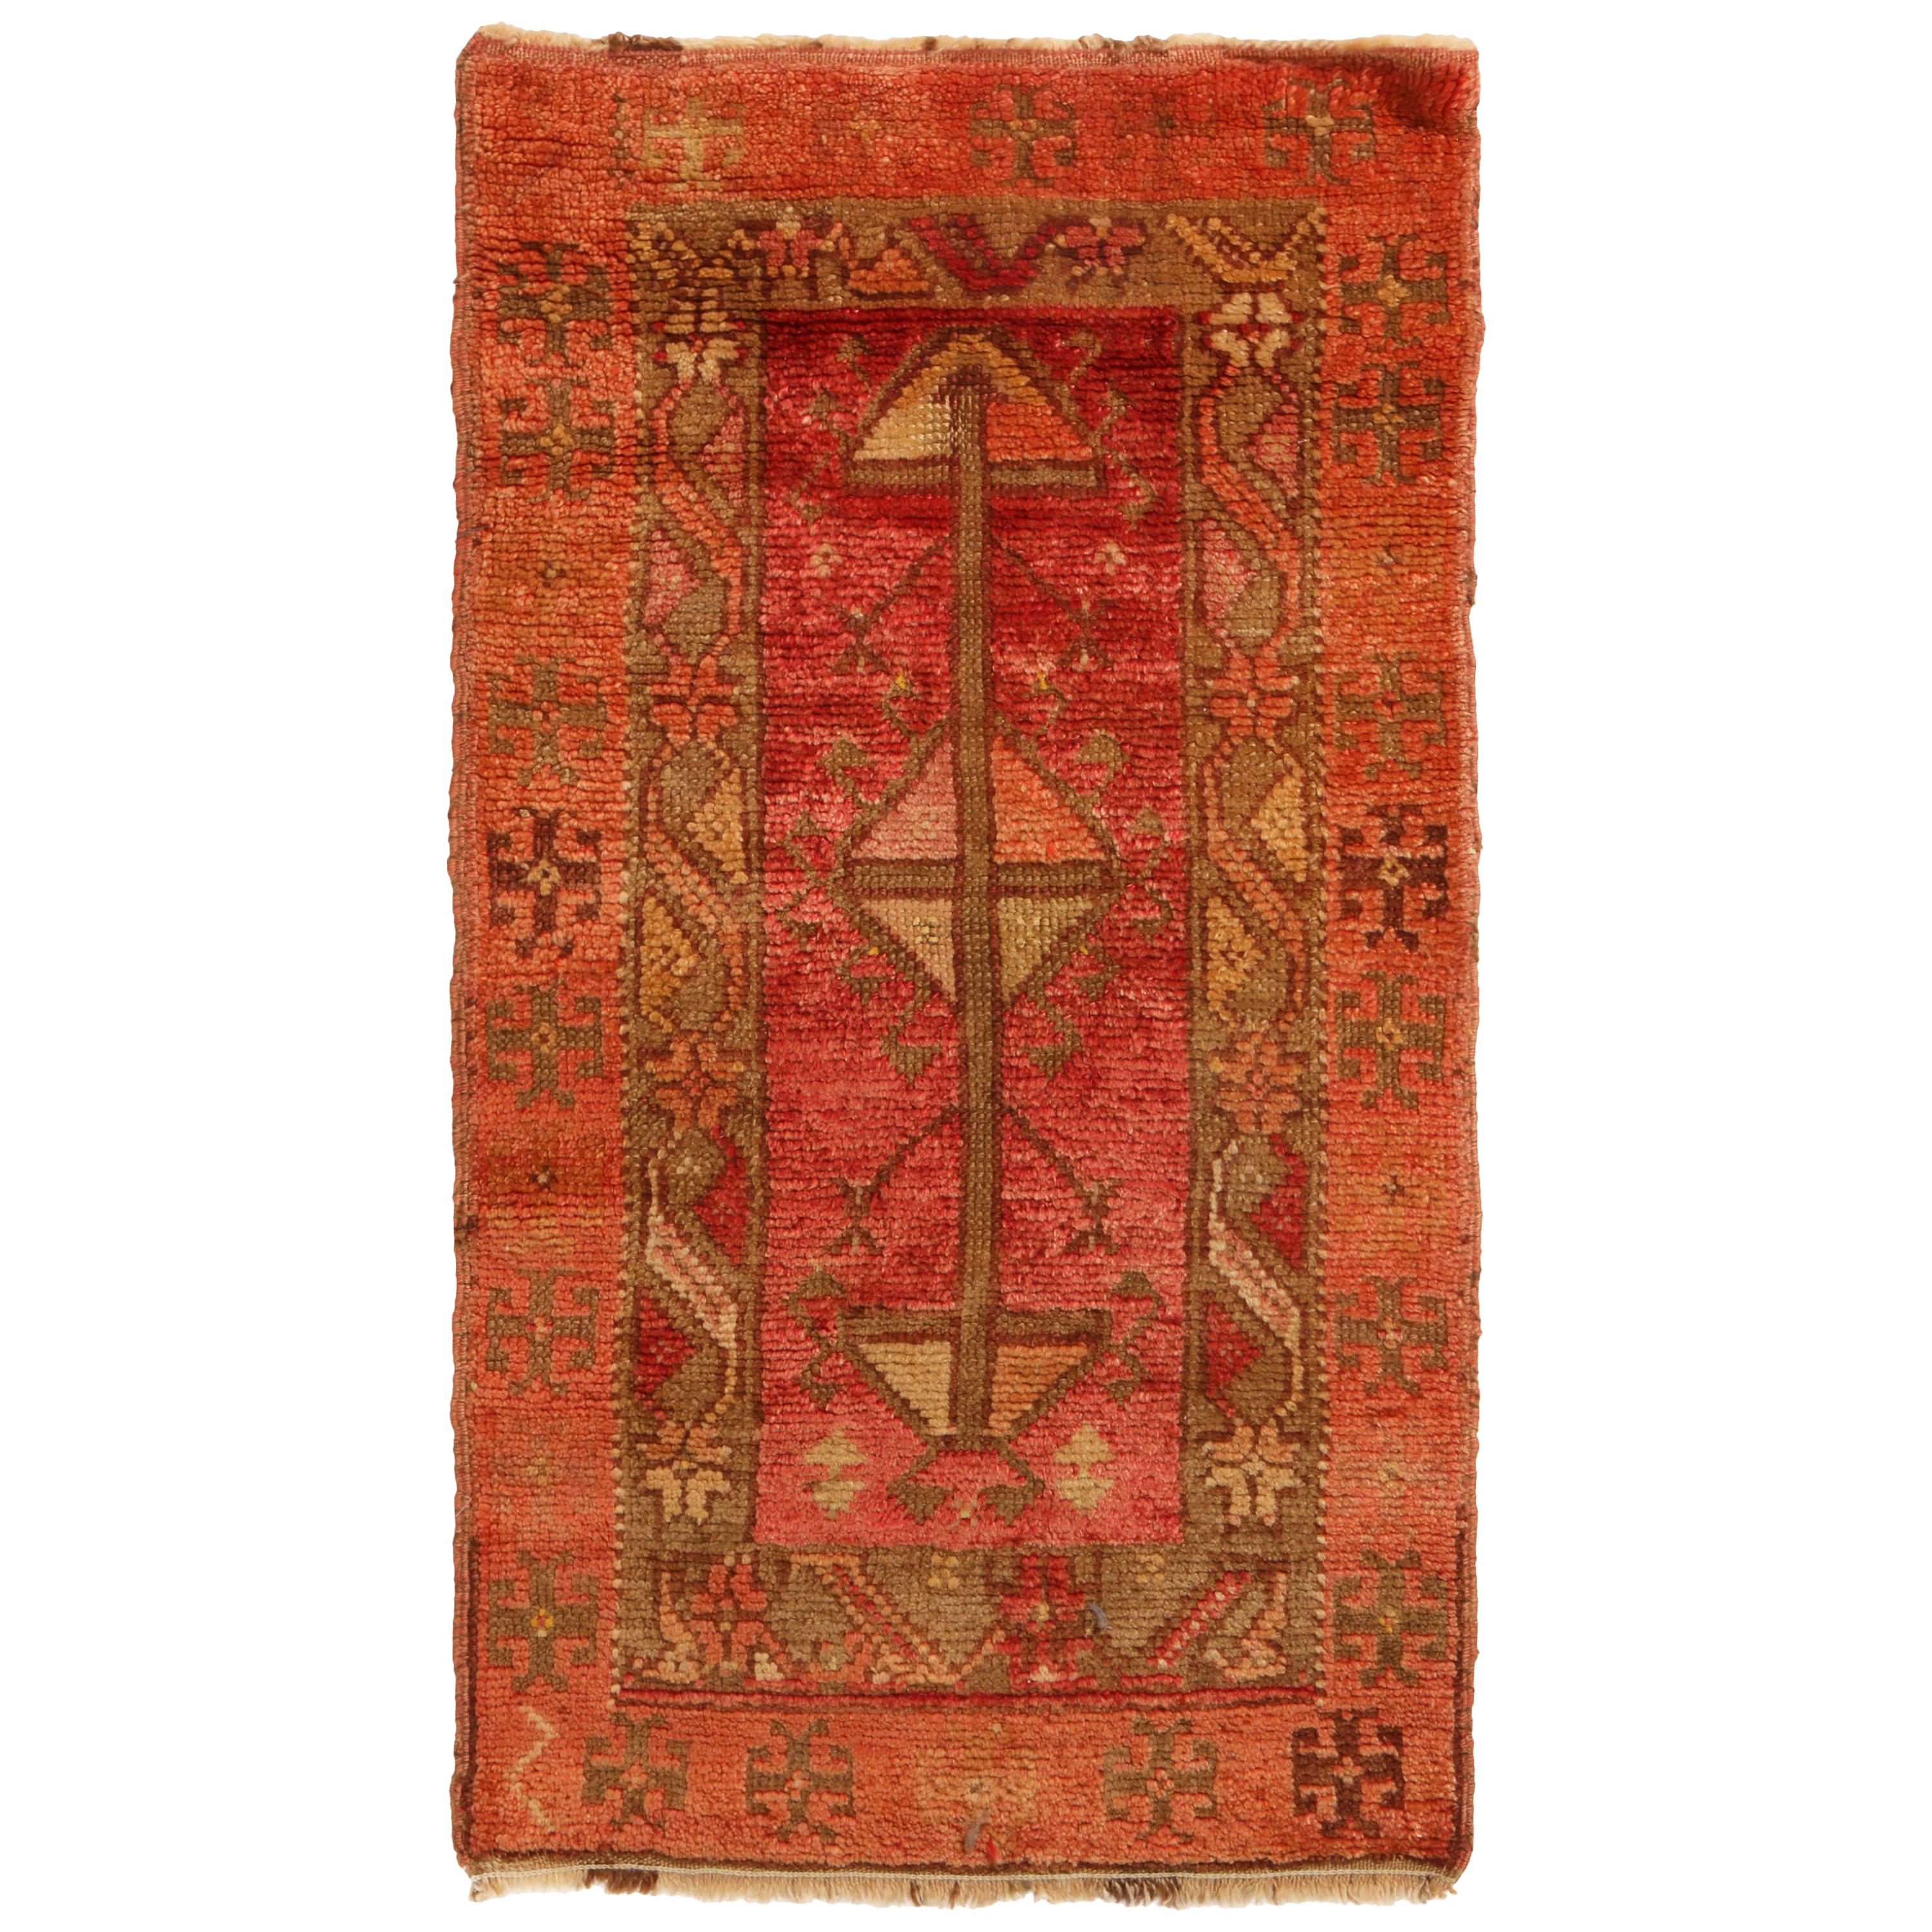 Antique Oushak Geometric Orange Pink Wool Rug